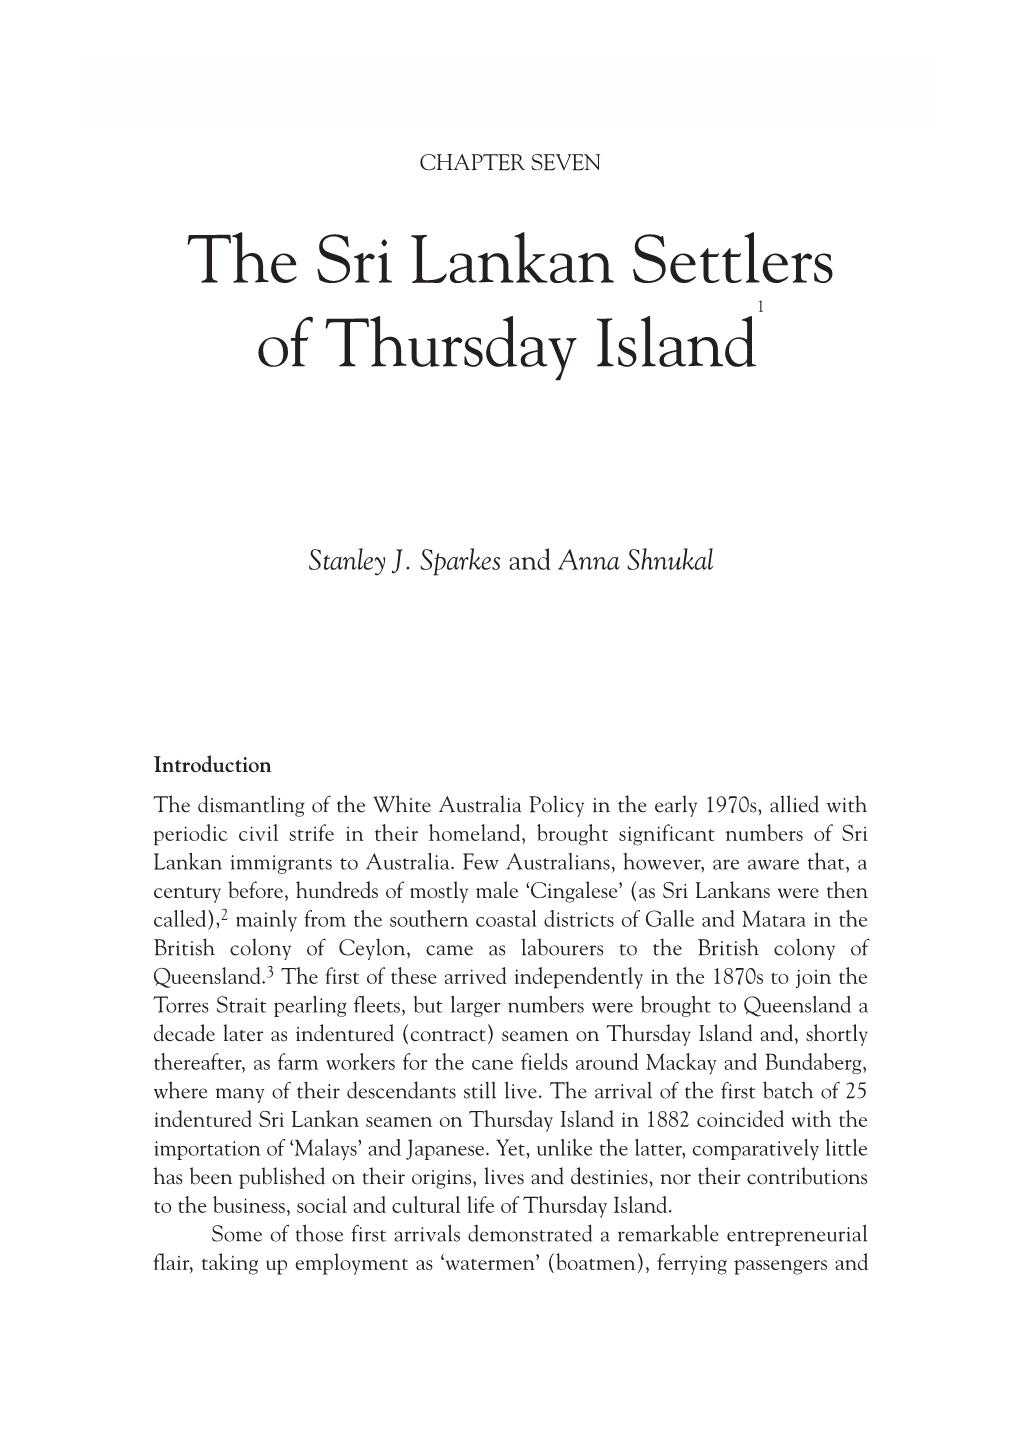 The Sri Lankan Settlers of Thursday Island 163